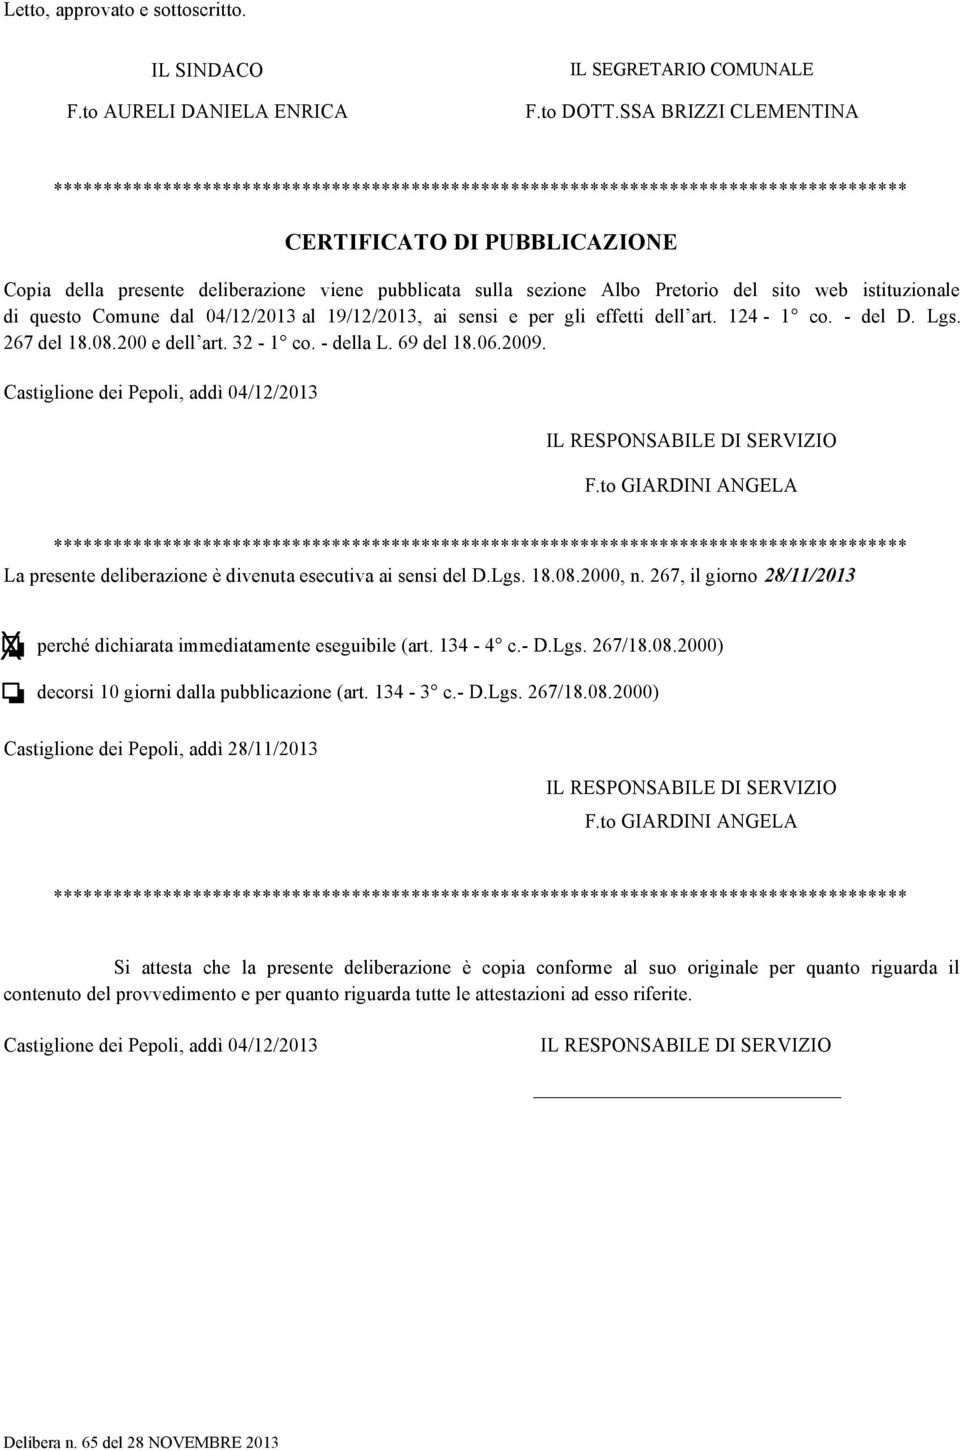 sezione Albo Pretorio del sito web istituzionale di questo Comune dal 04/12/2013 al 19/12/2013, ai sensi e per gli effetti dell art. 124-1 co. - del D. Lgs. 267 del 18.08.200 e dell art. 32-1 co.